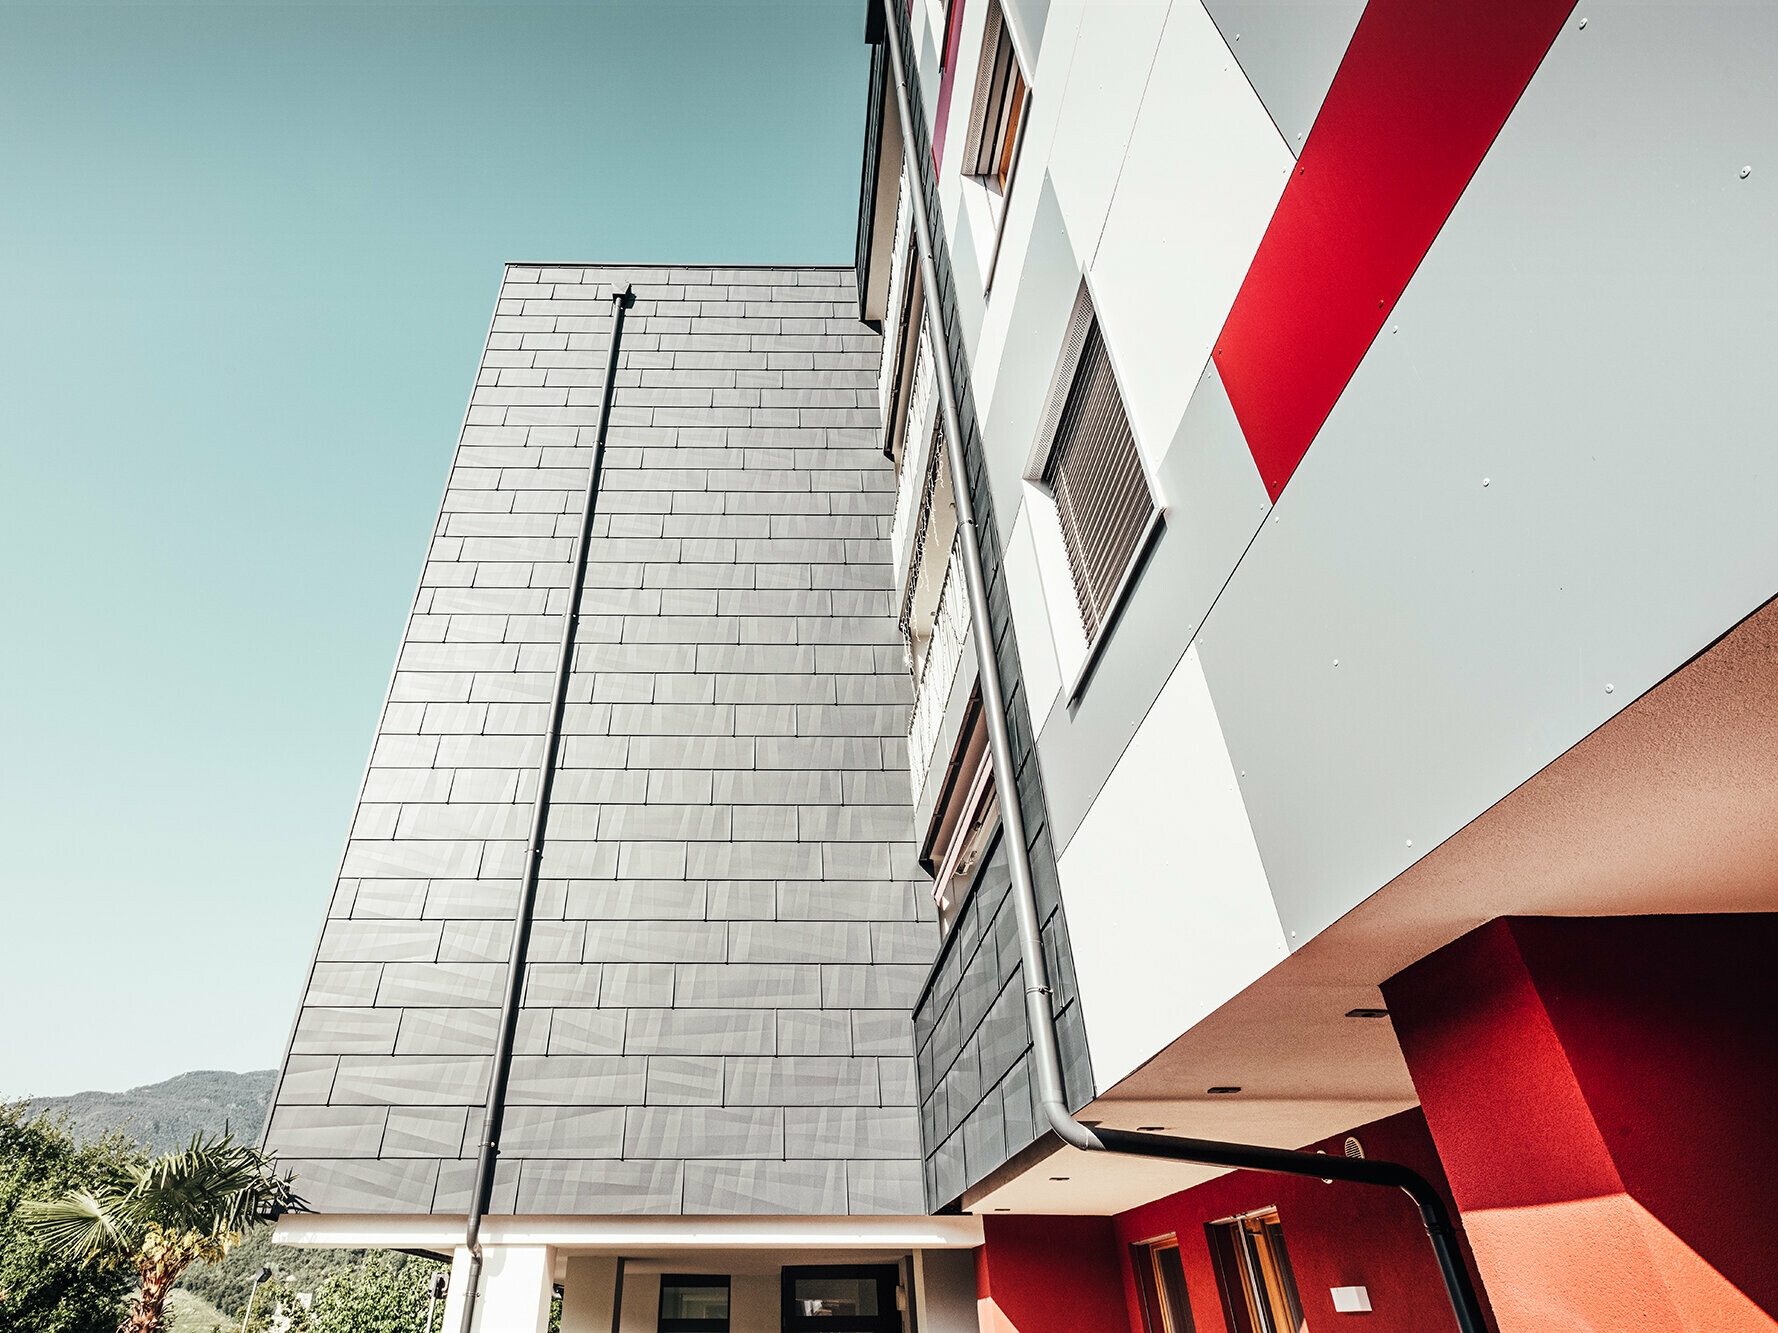 Nahaufnahme von unten. Frontal: die anthrazitfarbene PREFA Fassade. Rechts: die weiß-grau-rote Fassadenfront.